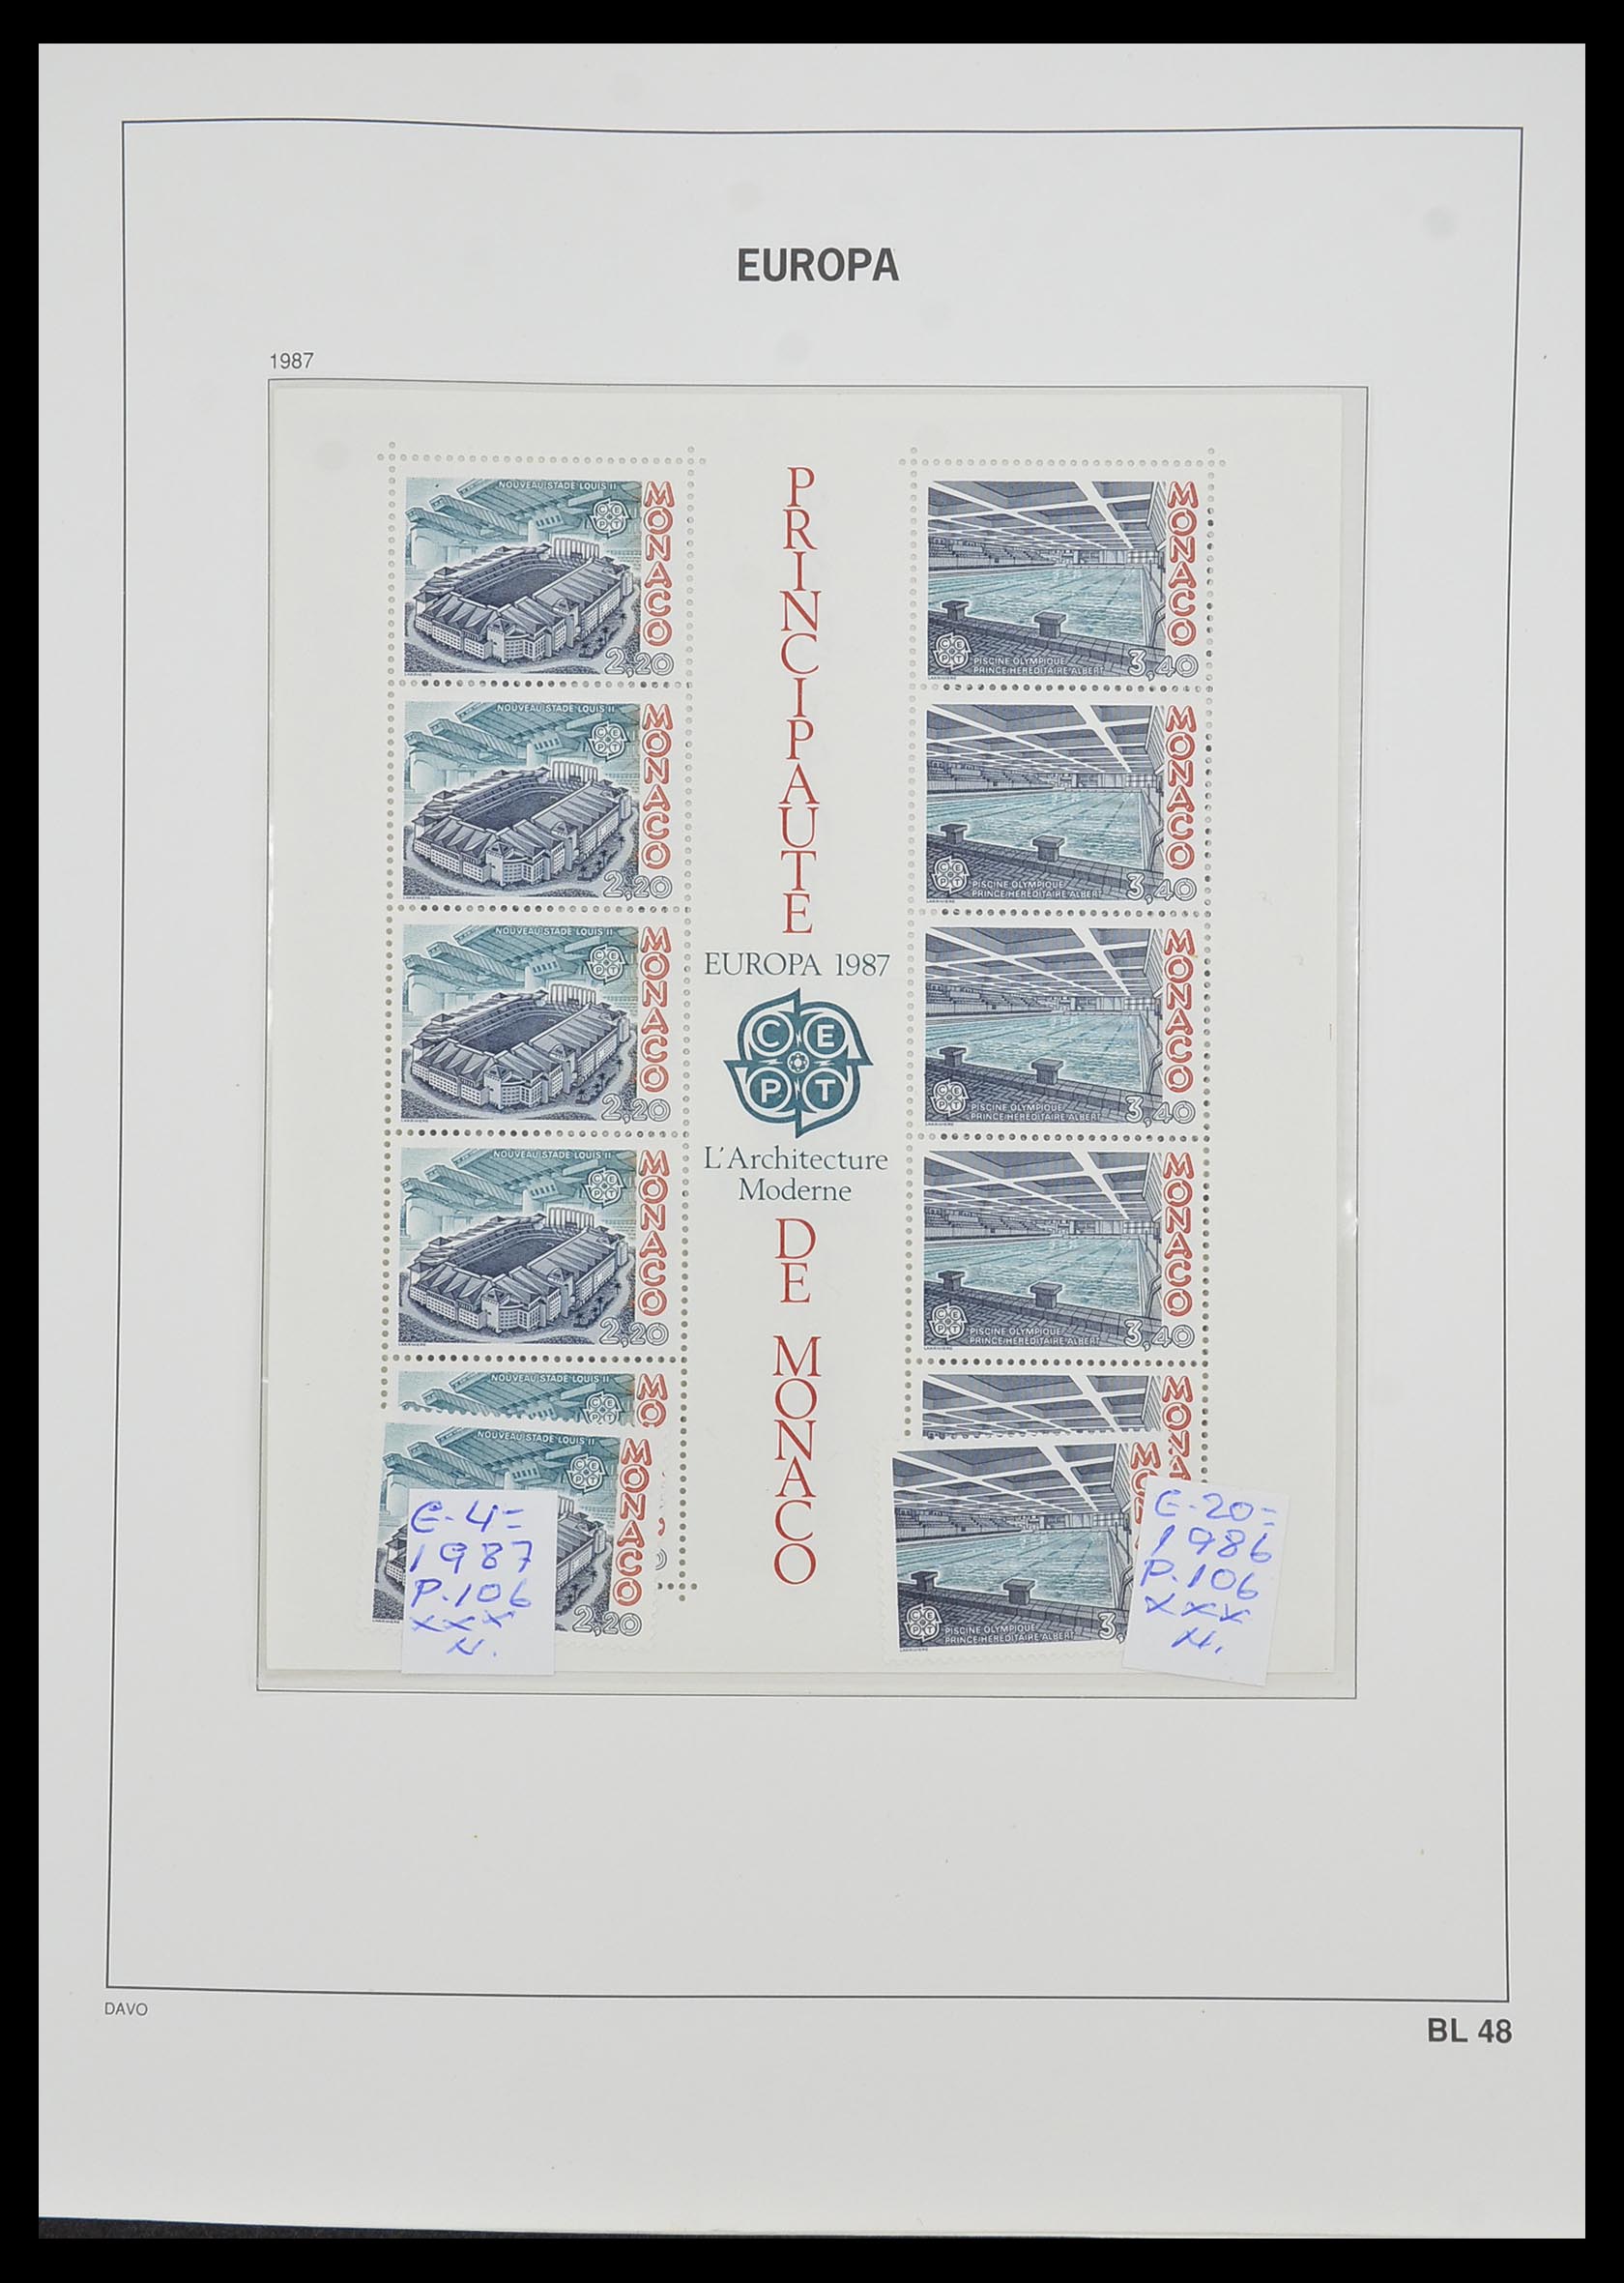 33985 048 - Stamp collection 33985 Europa CEPT souvenir sheets 1974-2014.